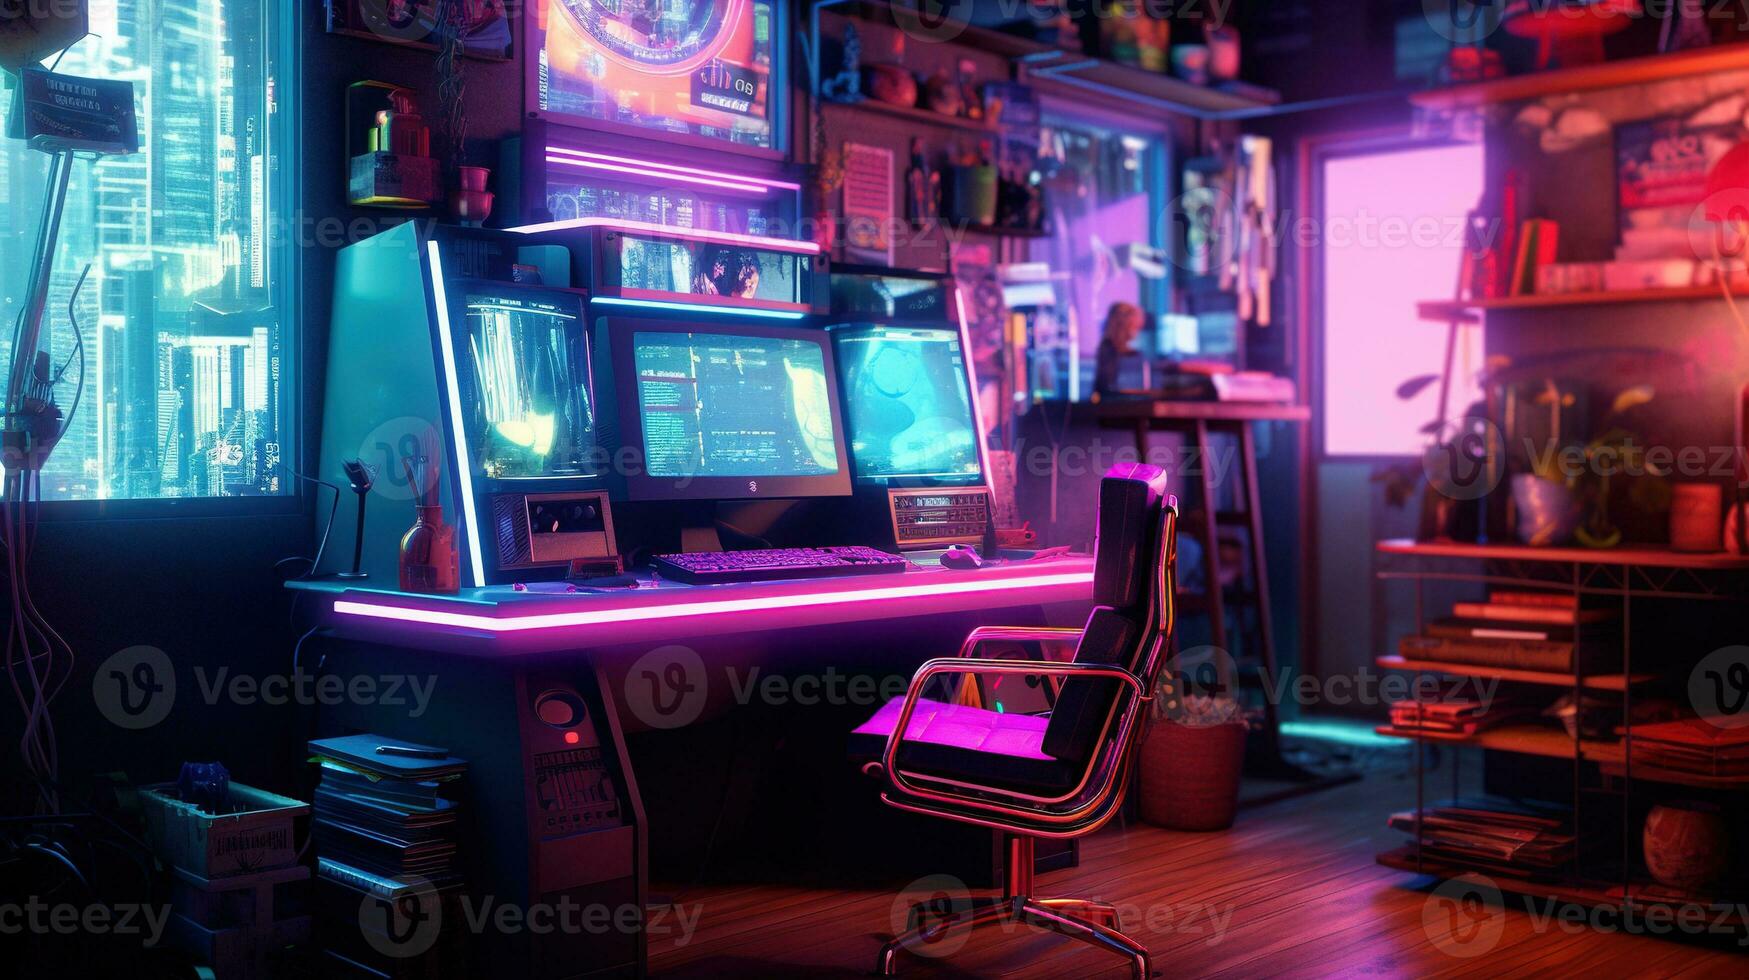 generativo ai, computer su il tavolo nel cyberpunk stile, nostalgico anni 80, anni 90. neon notte luci vivace colori, fotorealistico orizzontale illustrazione di il futuristico interno. tecnologia concetto. foto